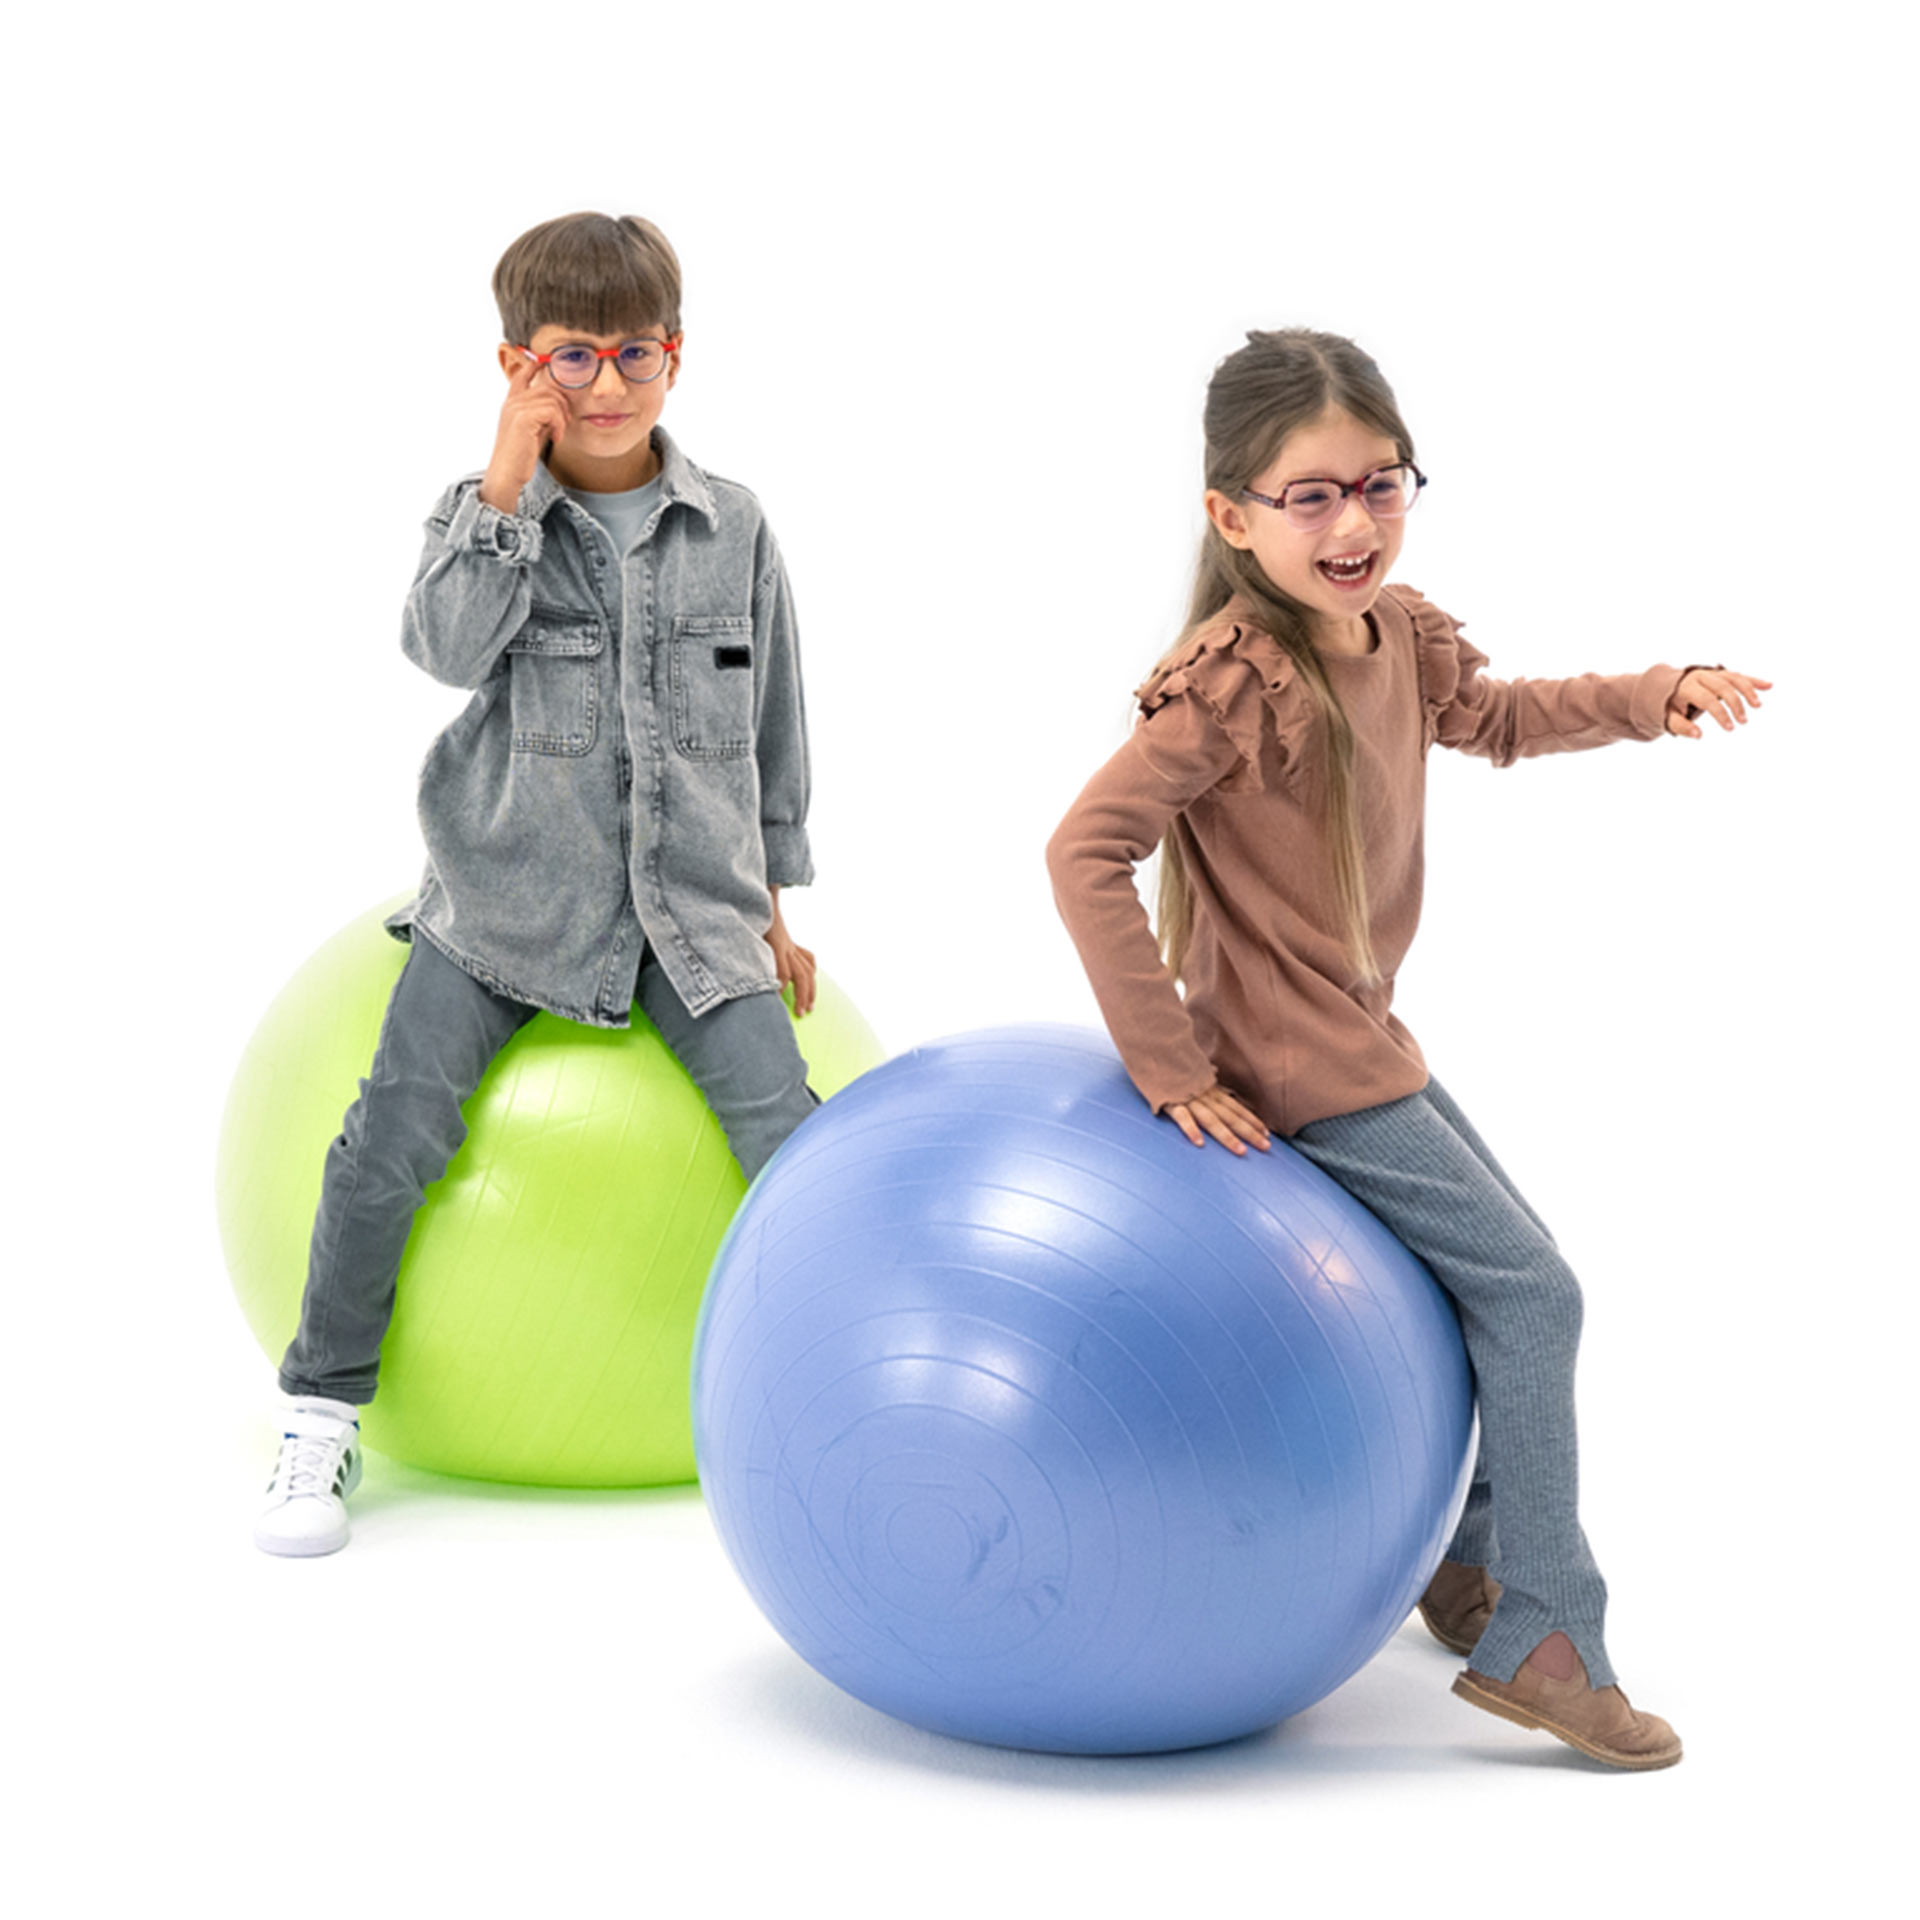 Um menino e uma menina, ambos de óculos, brincam alegremente com bolas de ginástica.